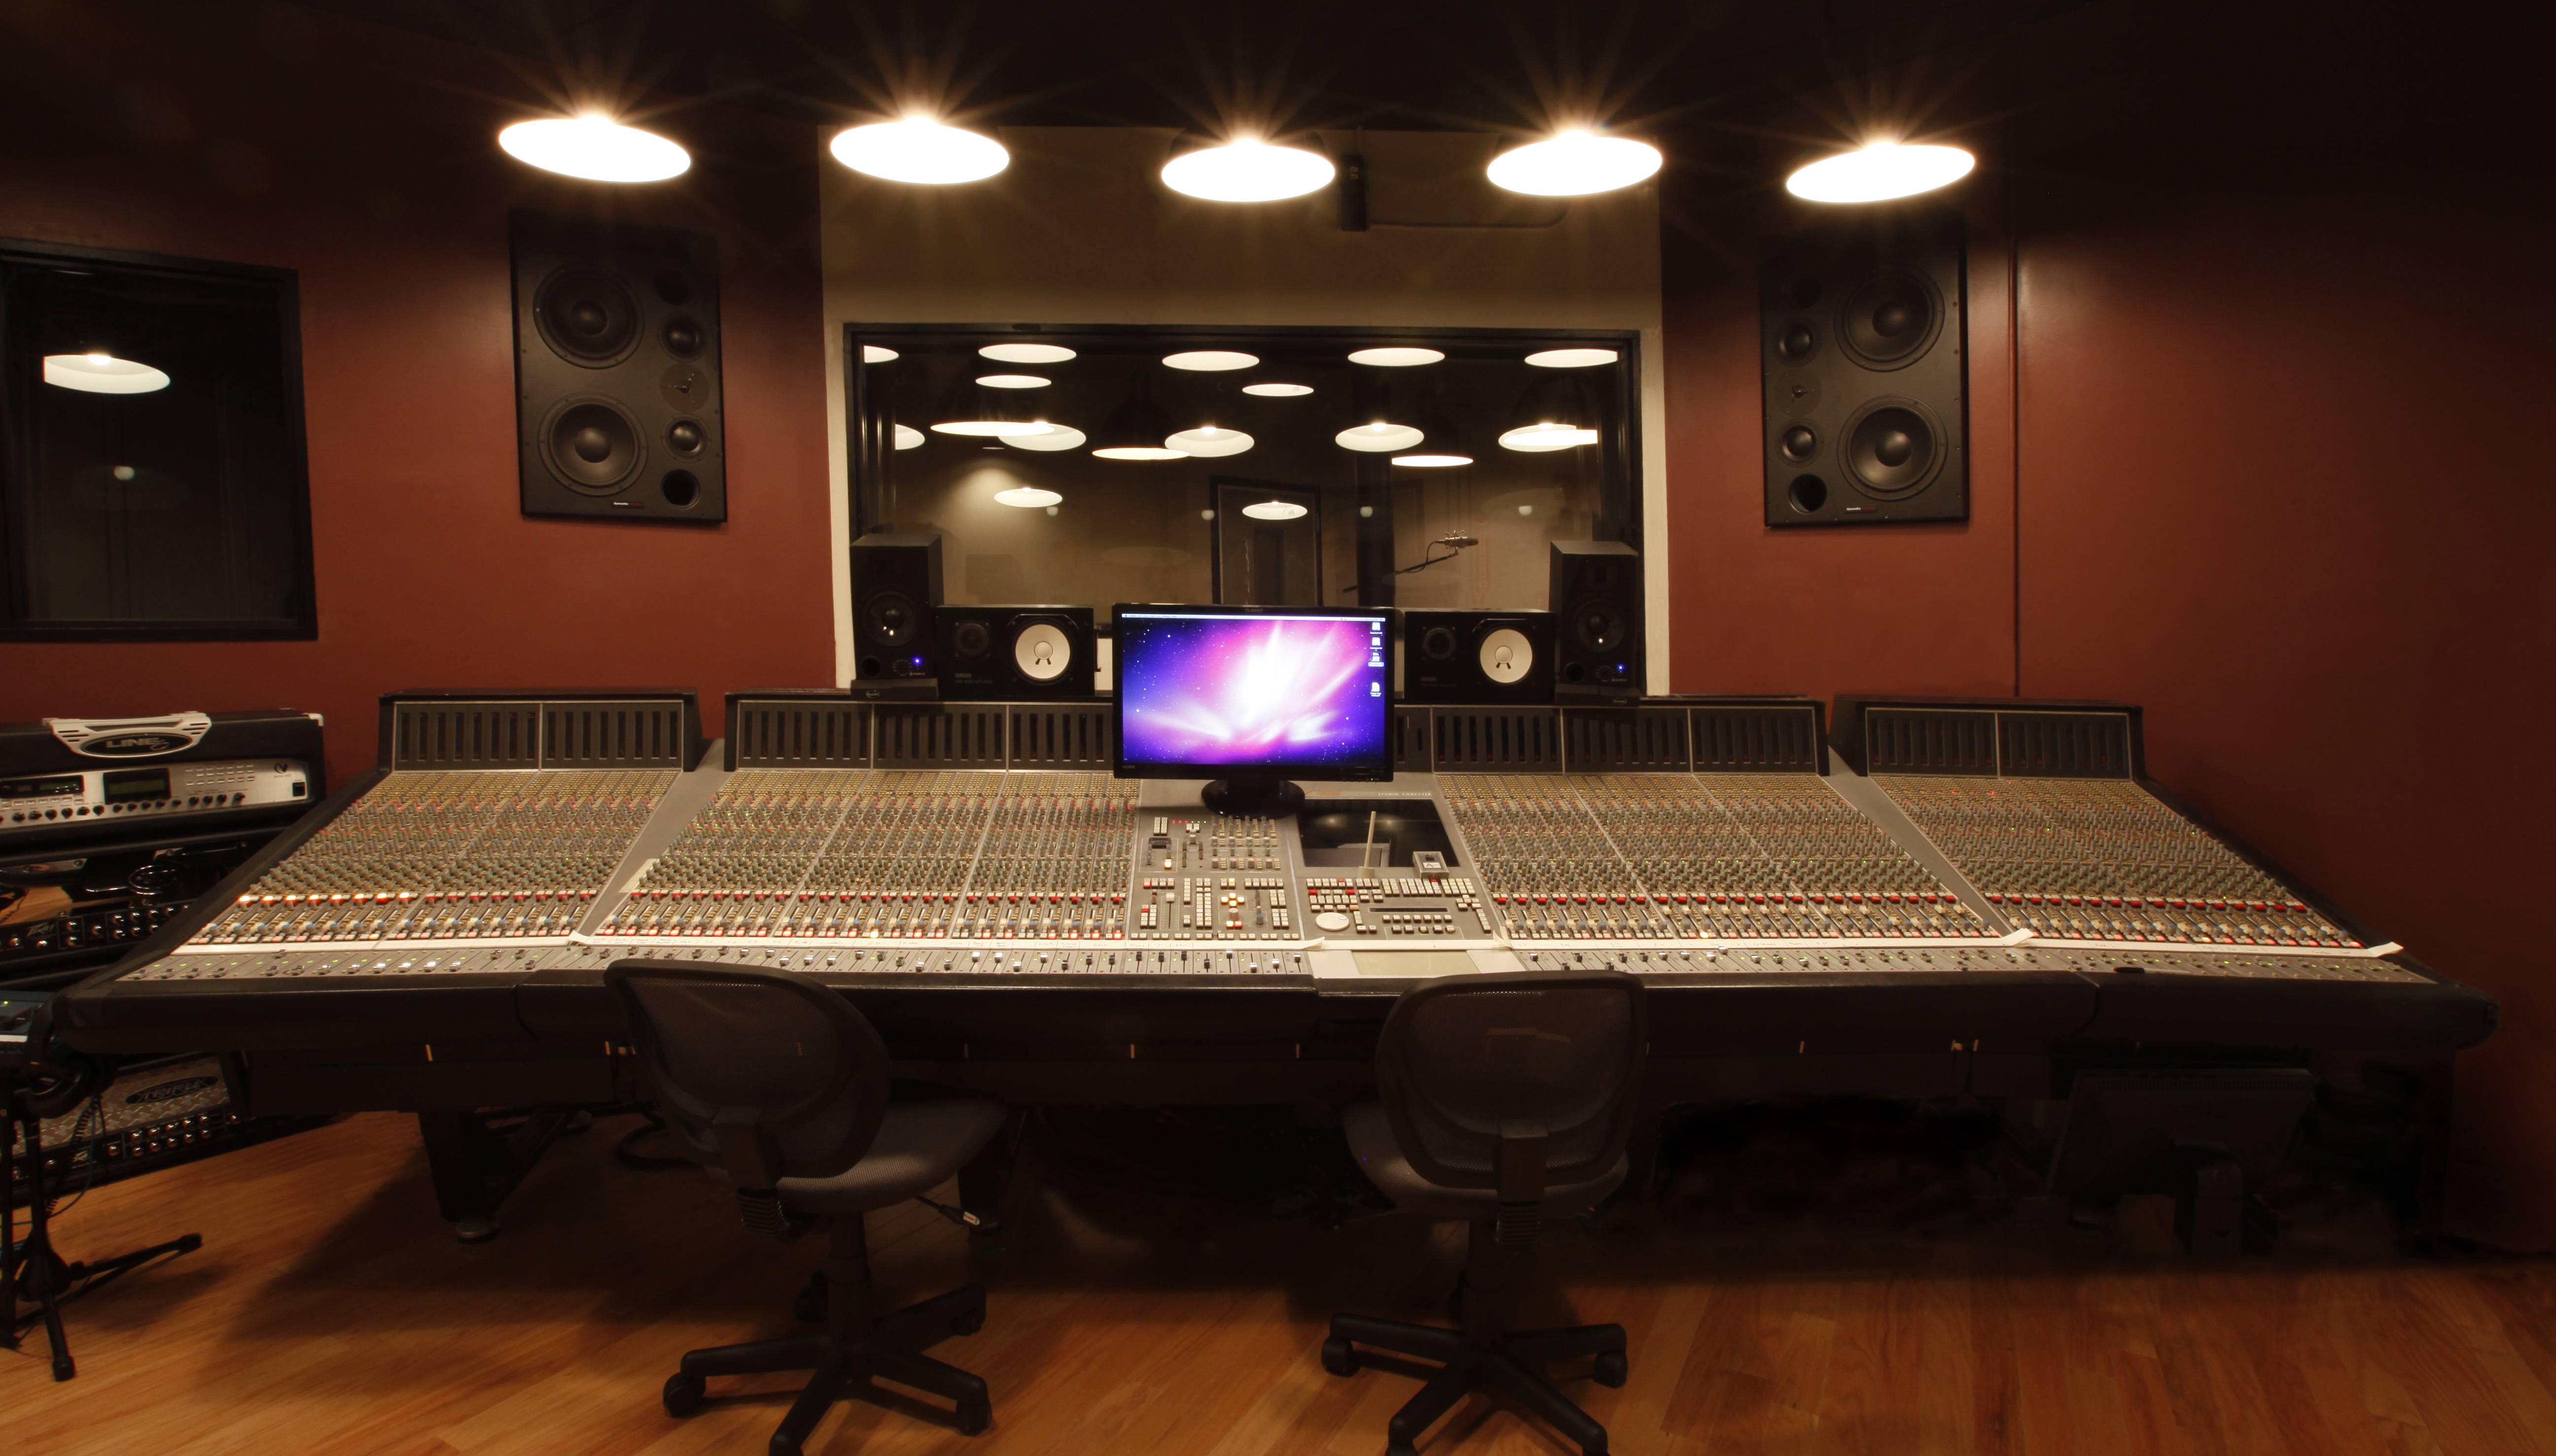 Wallpaper Desktop Recording Studio Microphones 2560 X 1600 572 Kb